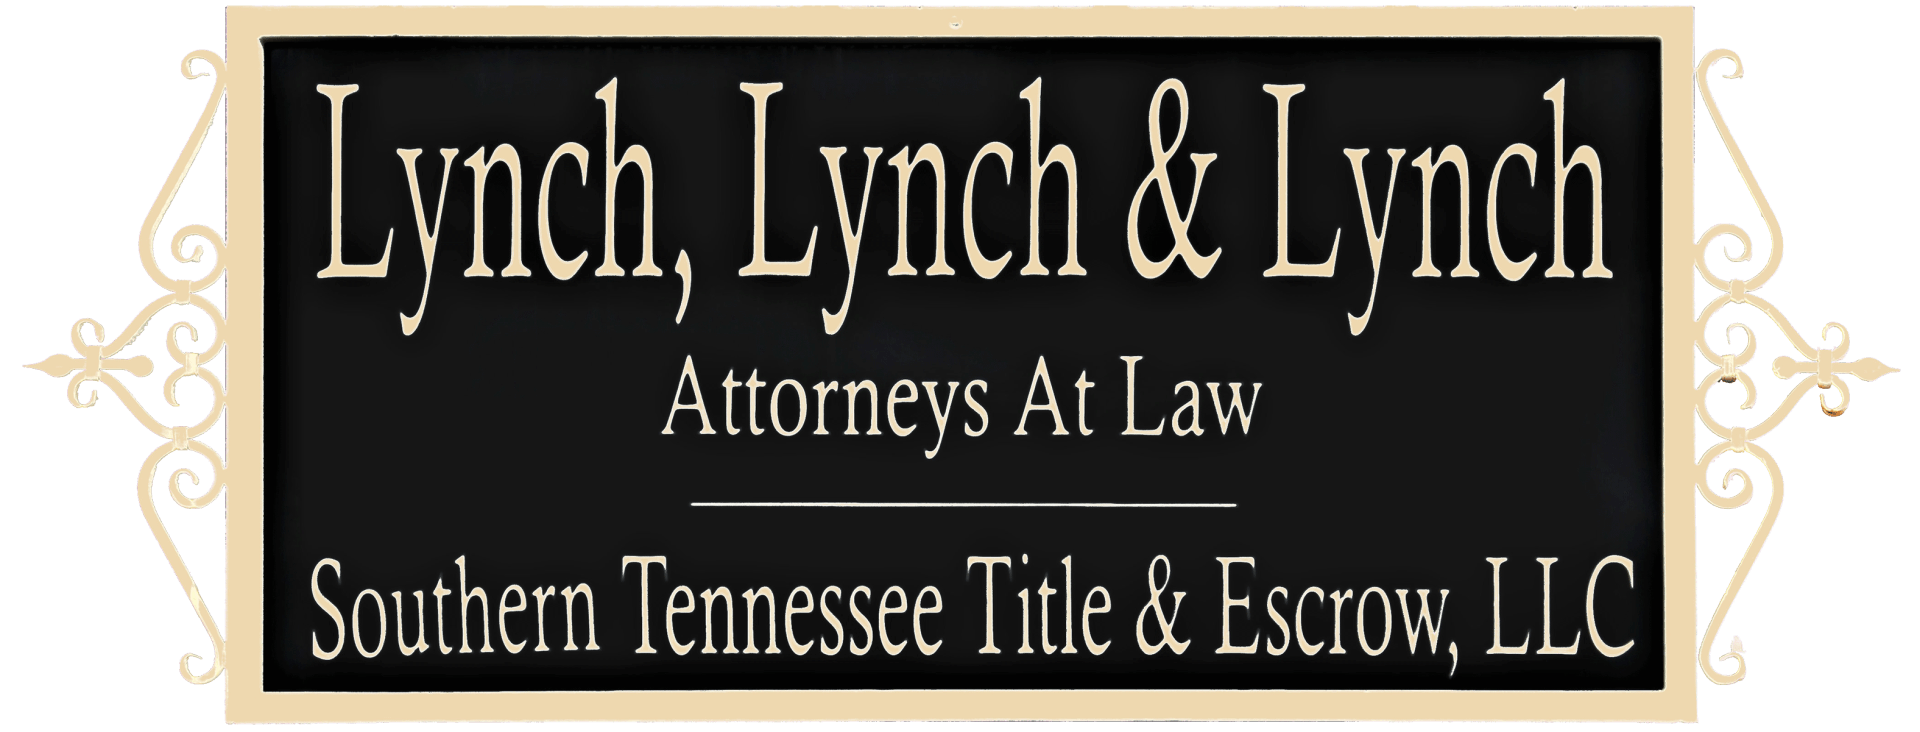 Lynch, Lynch, & Lynch Attorneys at Law